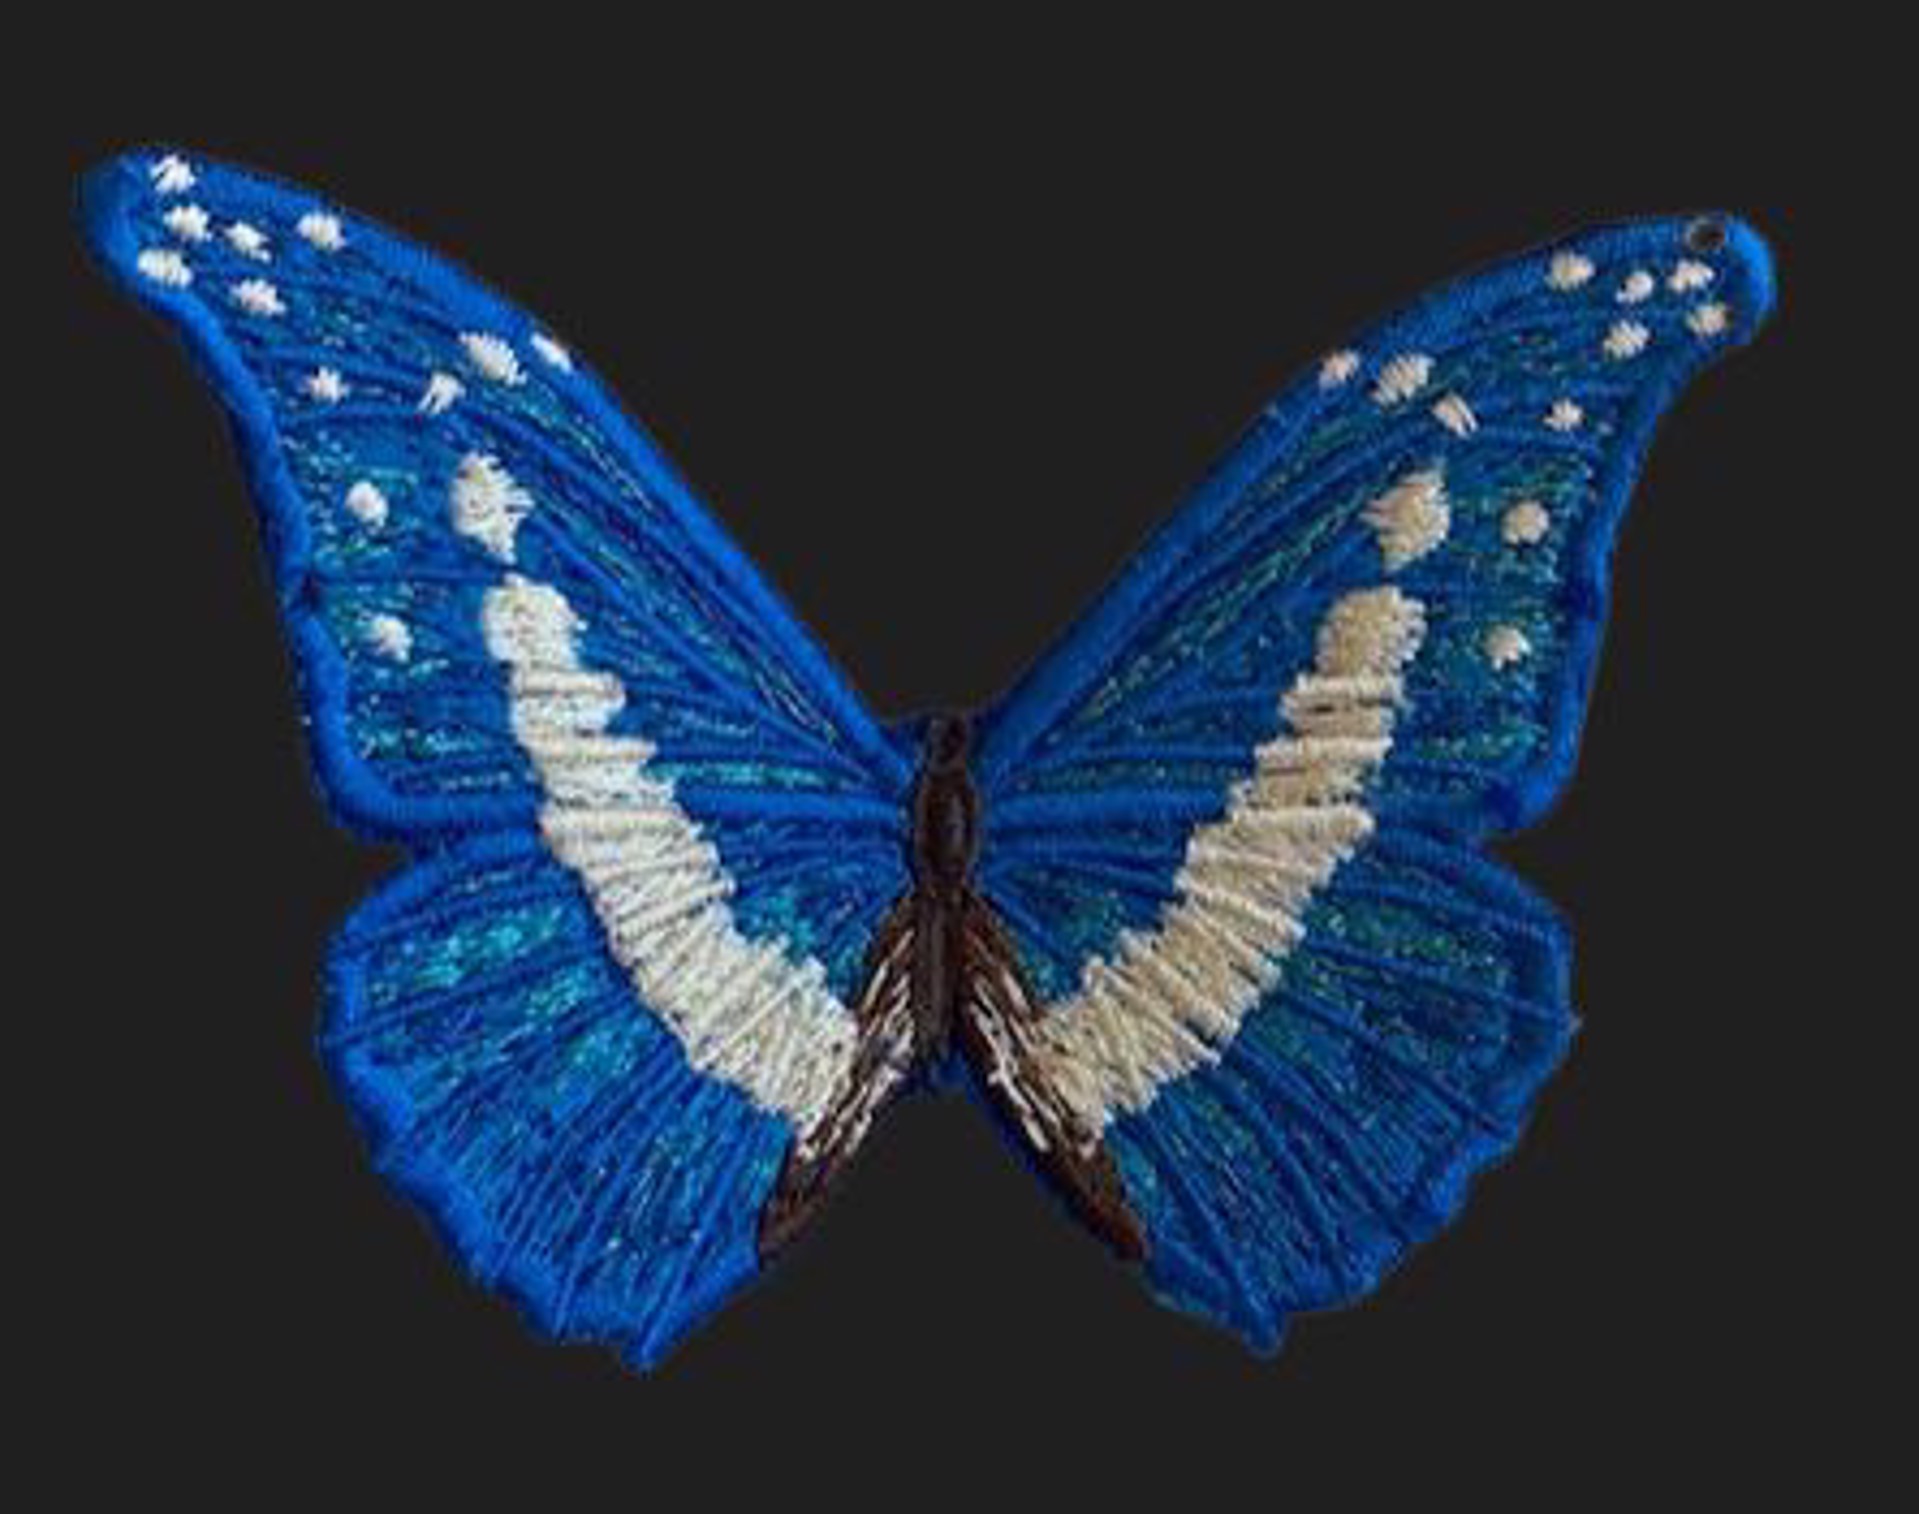 Blue Butterfly 4" by Stephen Wilson